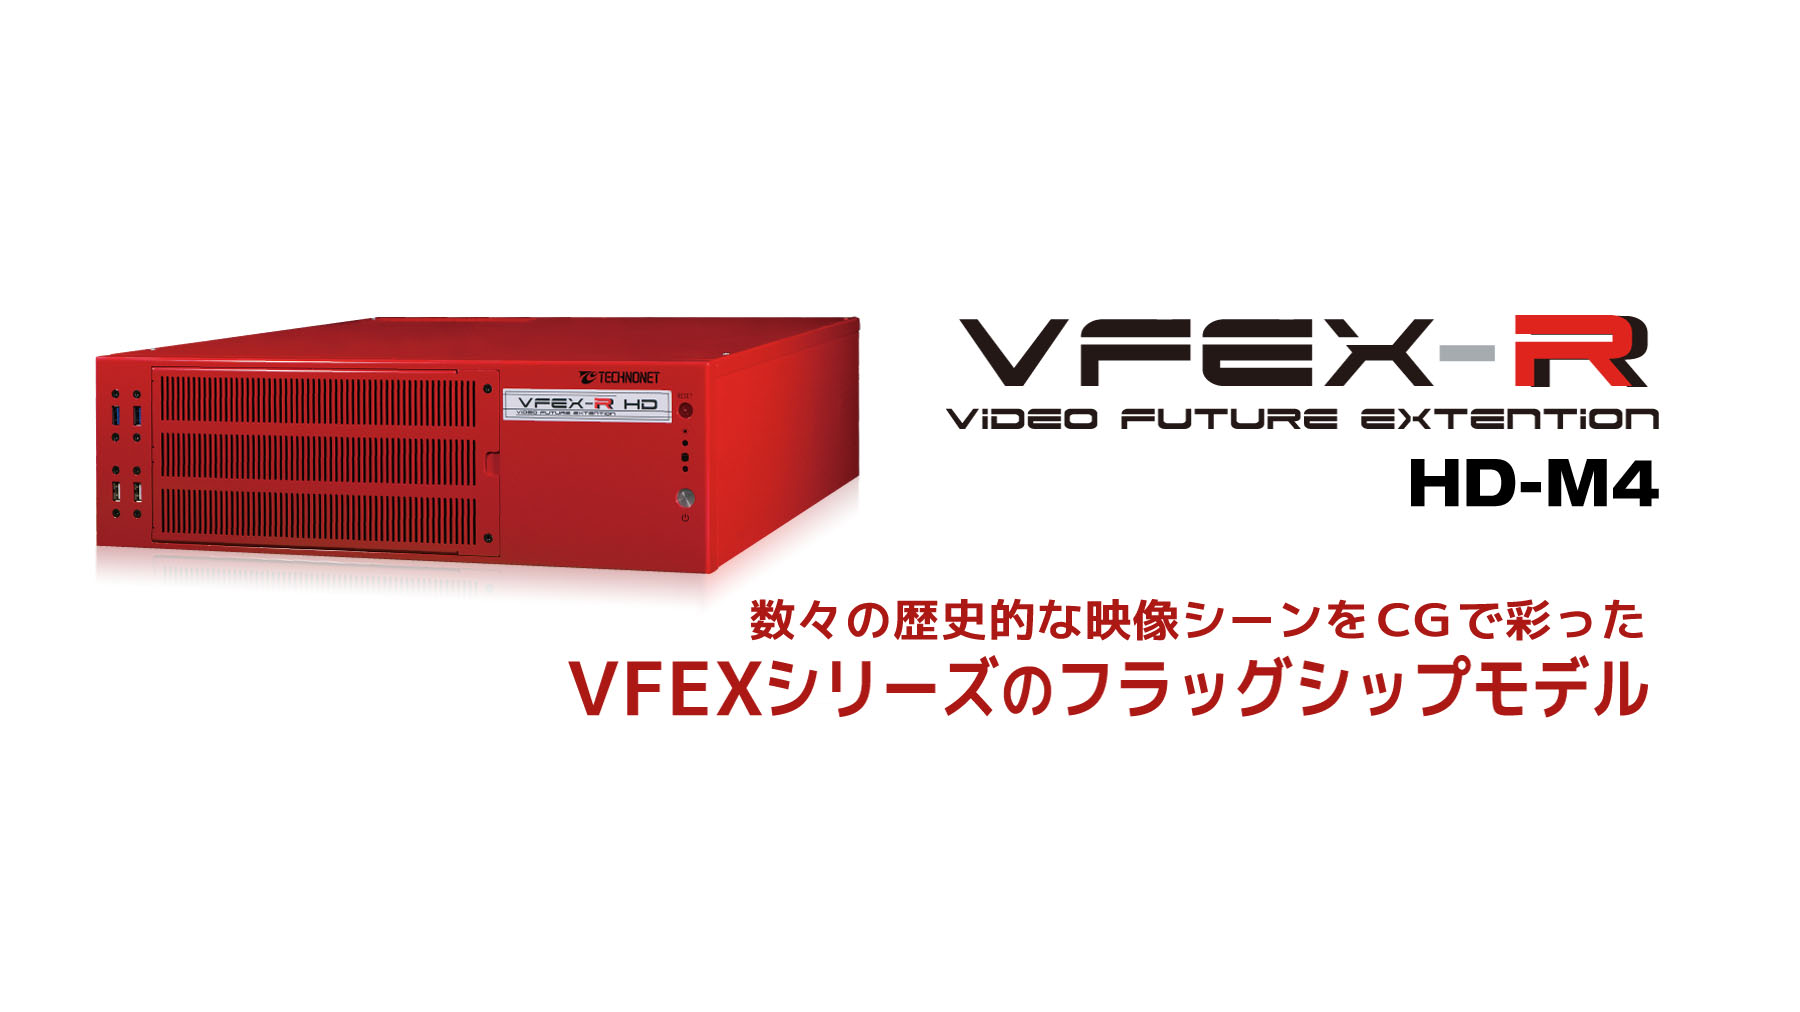 VFEX-R <HD-M4>